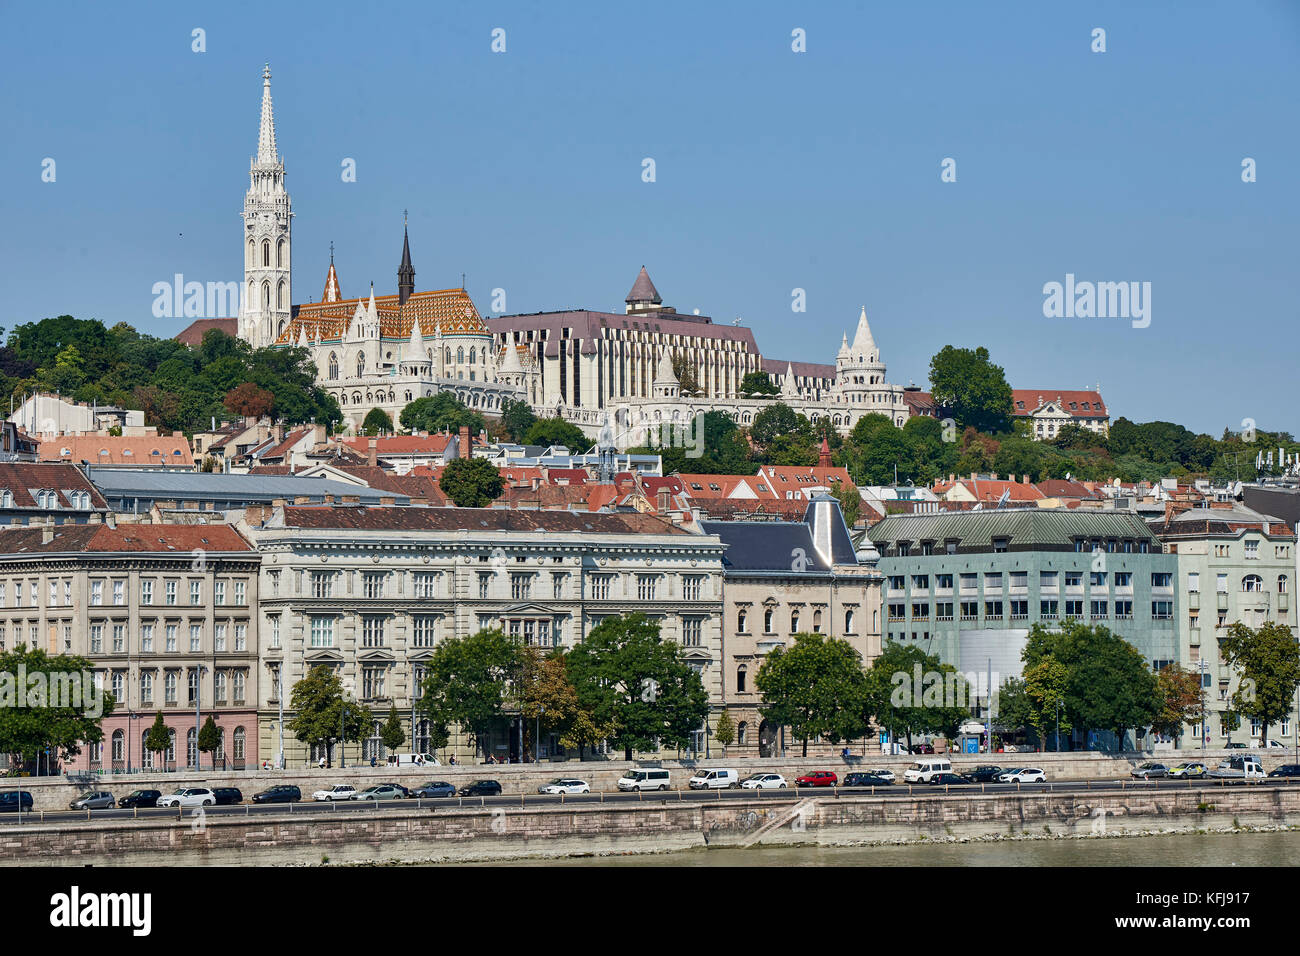 River promenade du Danube à Budapest vue du pont de maillon de chaîne Lánchid Széchanyi avec l'église Matthias en vue sur l'horizon Banque D'Images